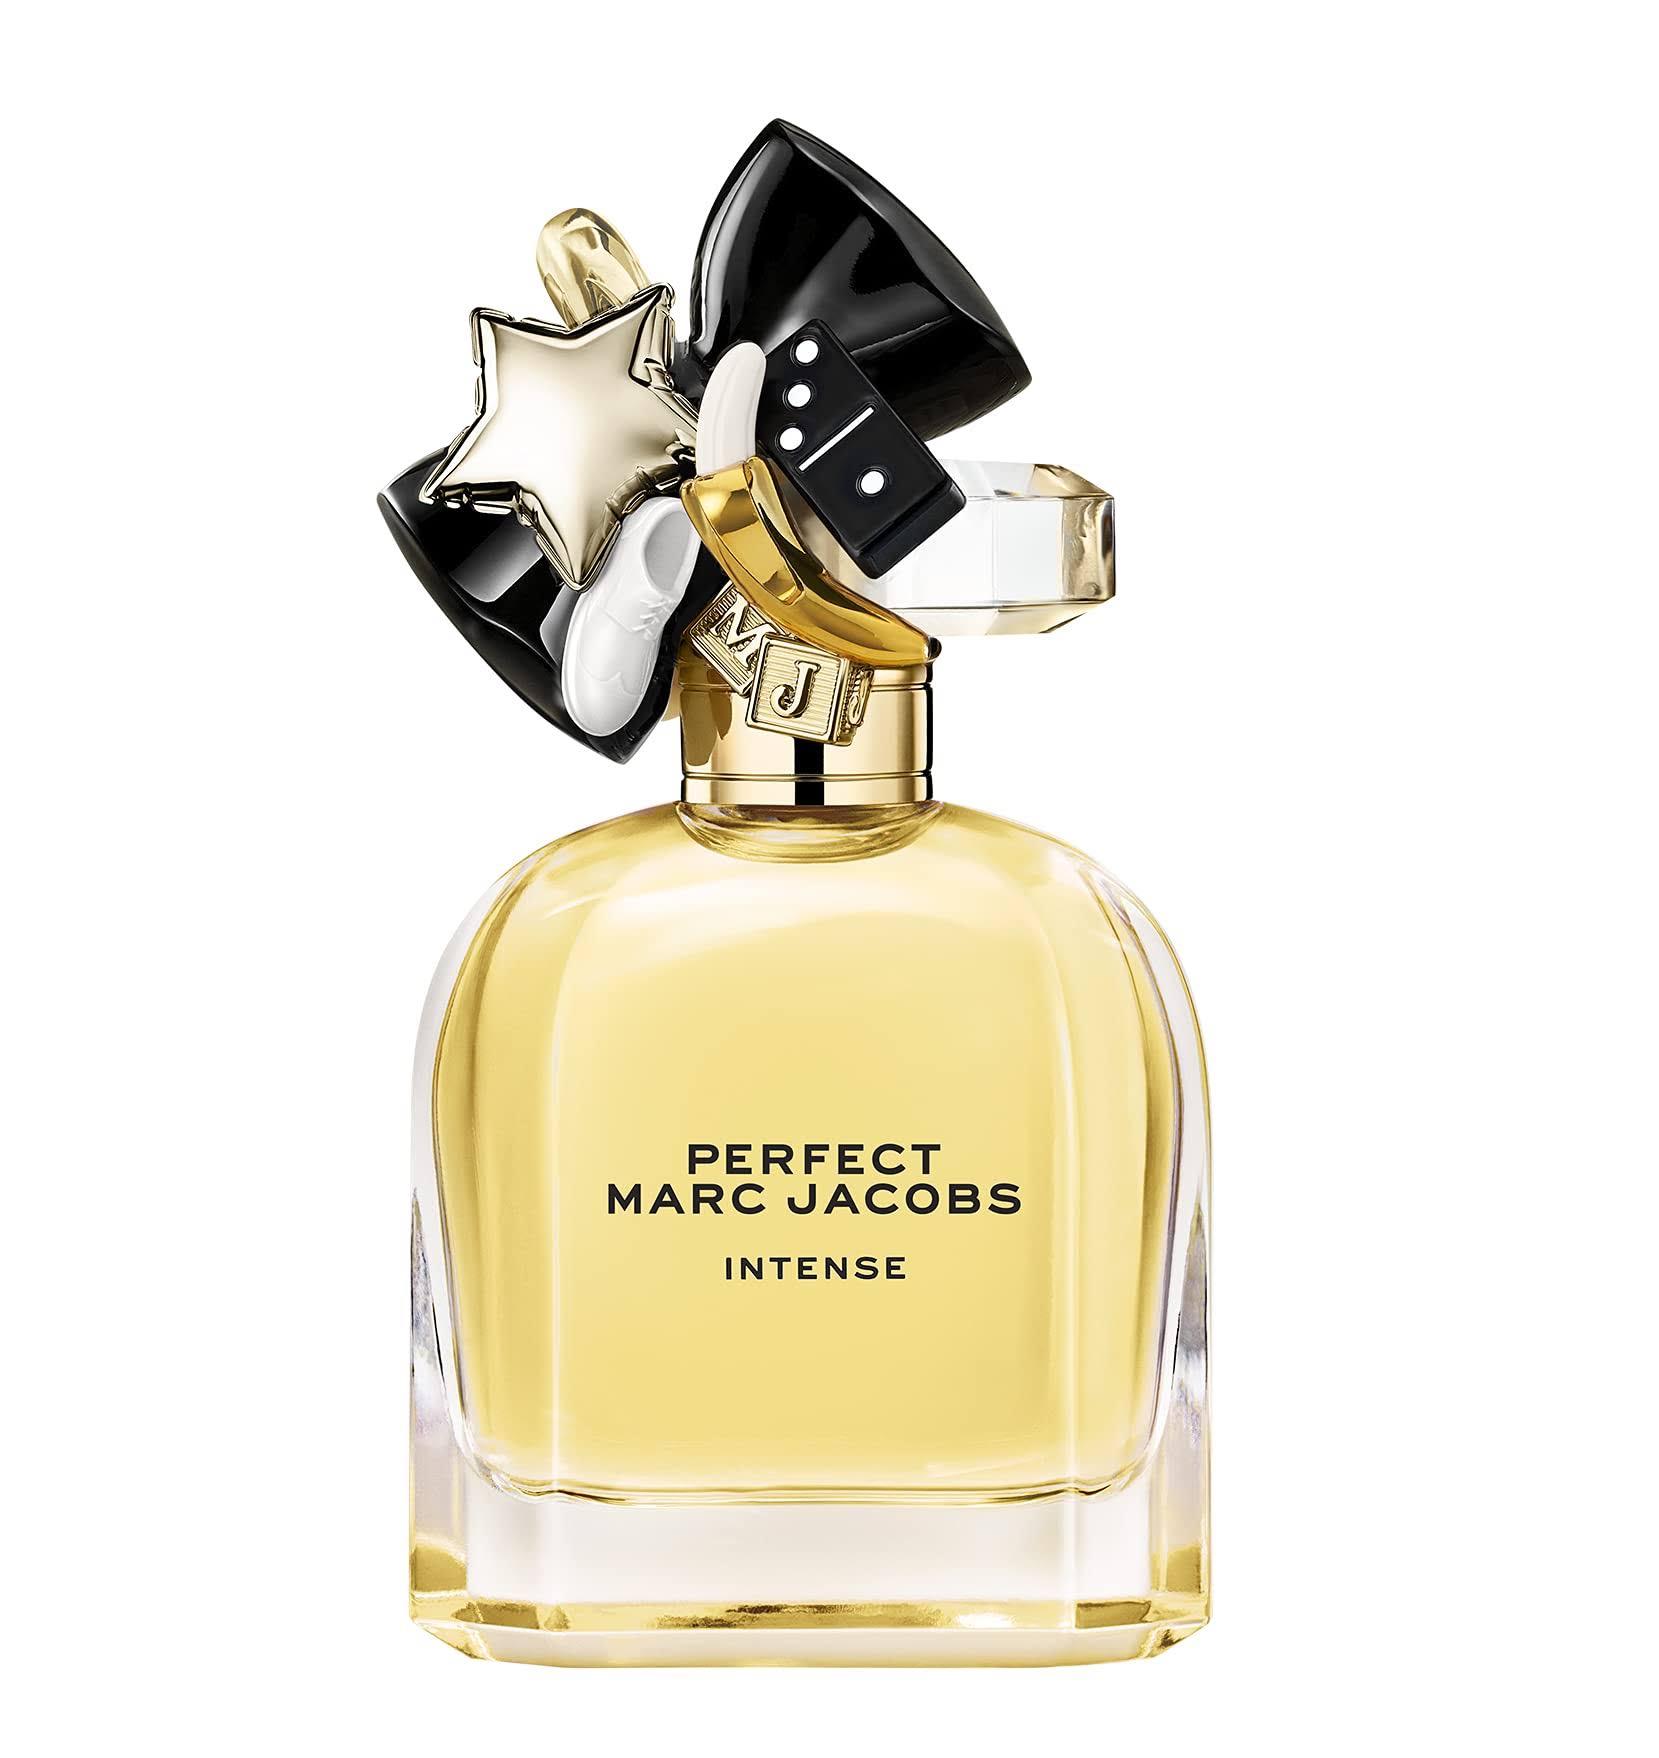 Marc Jacobs Perfect Intense 30ml Eau de Parfum